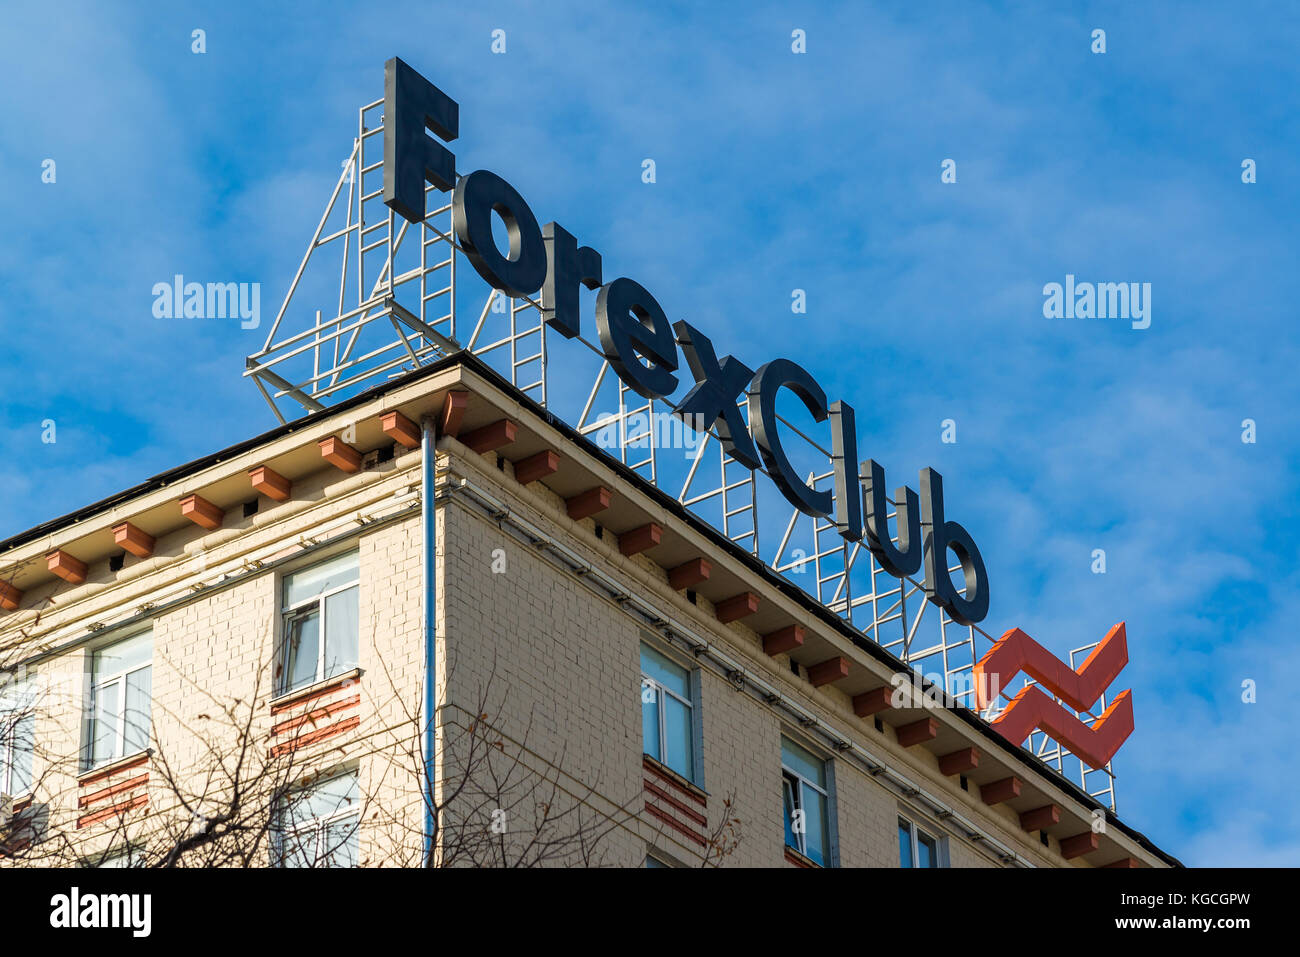 Moskau, Russland - November 2. 2017. forex Club - Werbung auf Gebäude Stockfoto